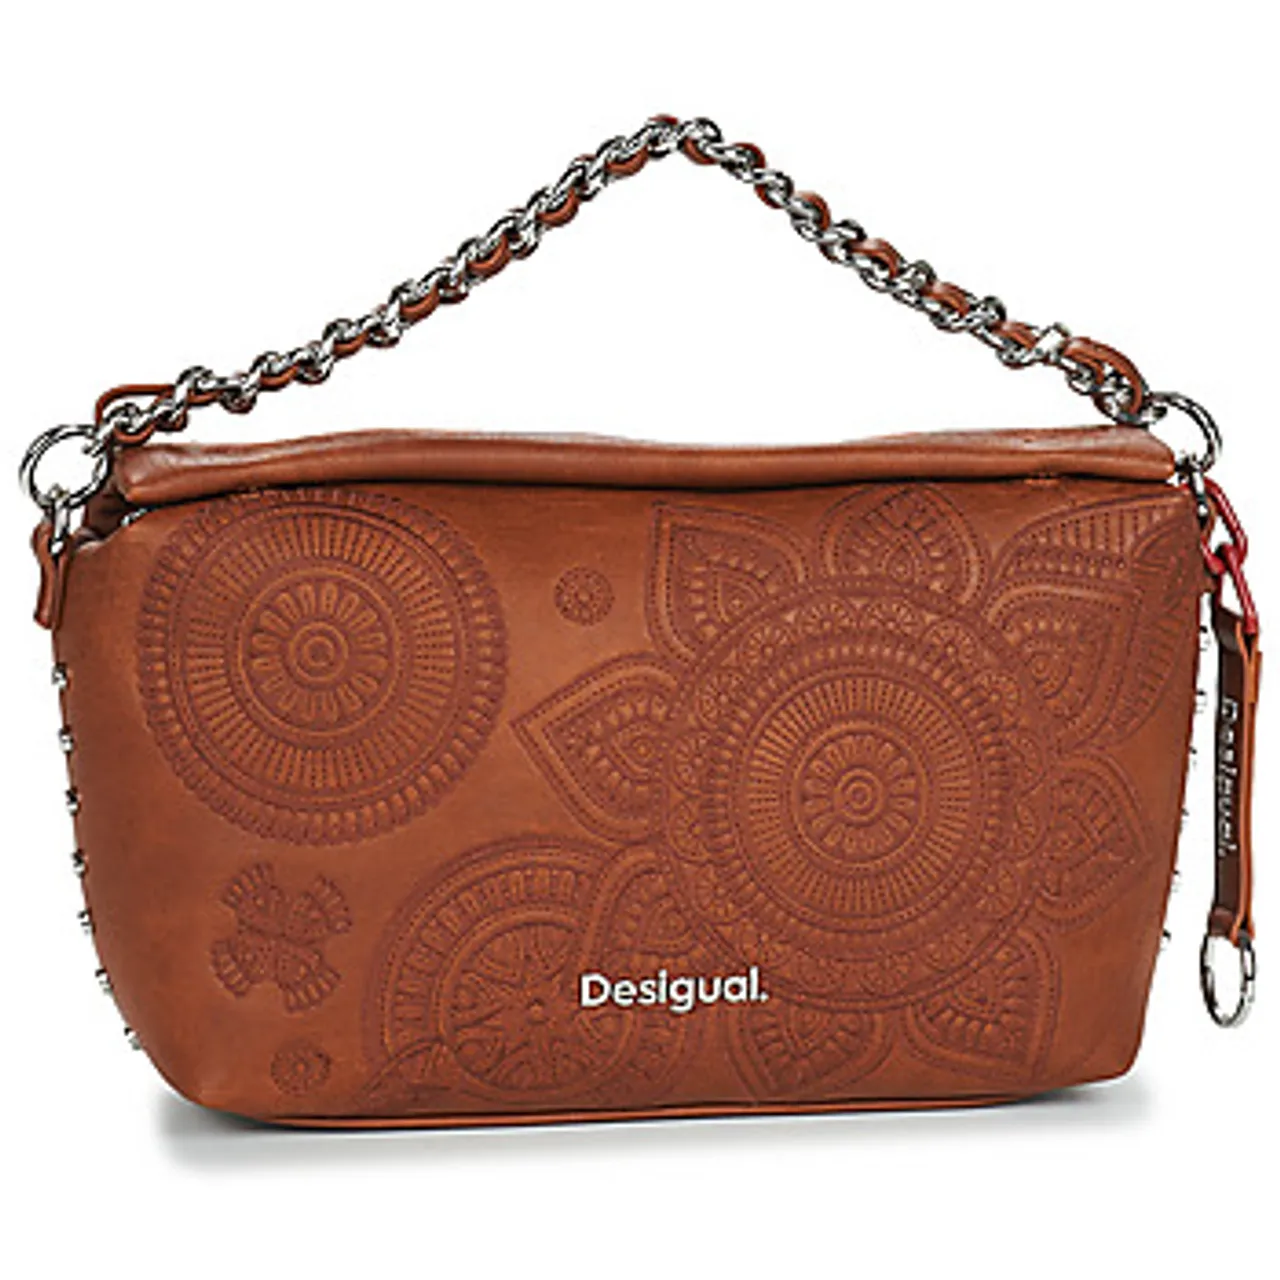 Desigual  DEJAVU NAS  women's Handbags in Brown